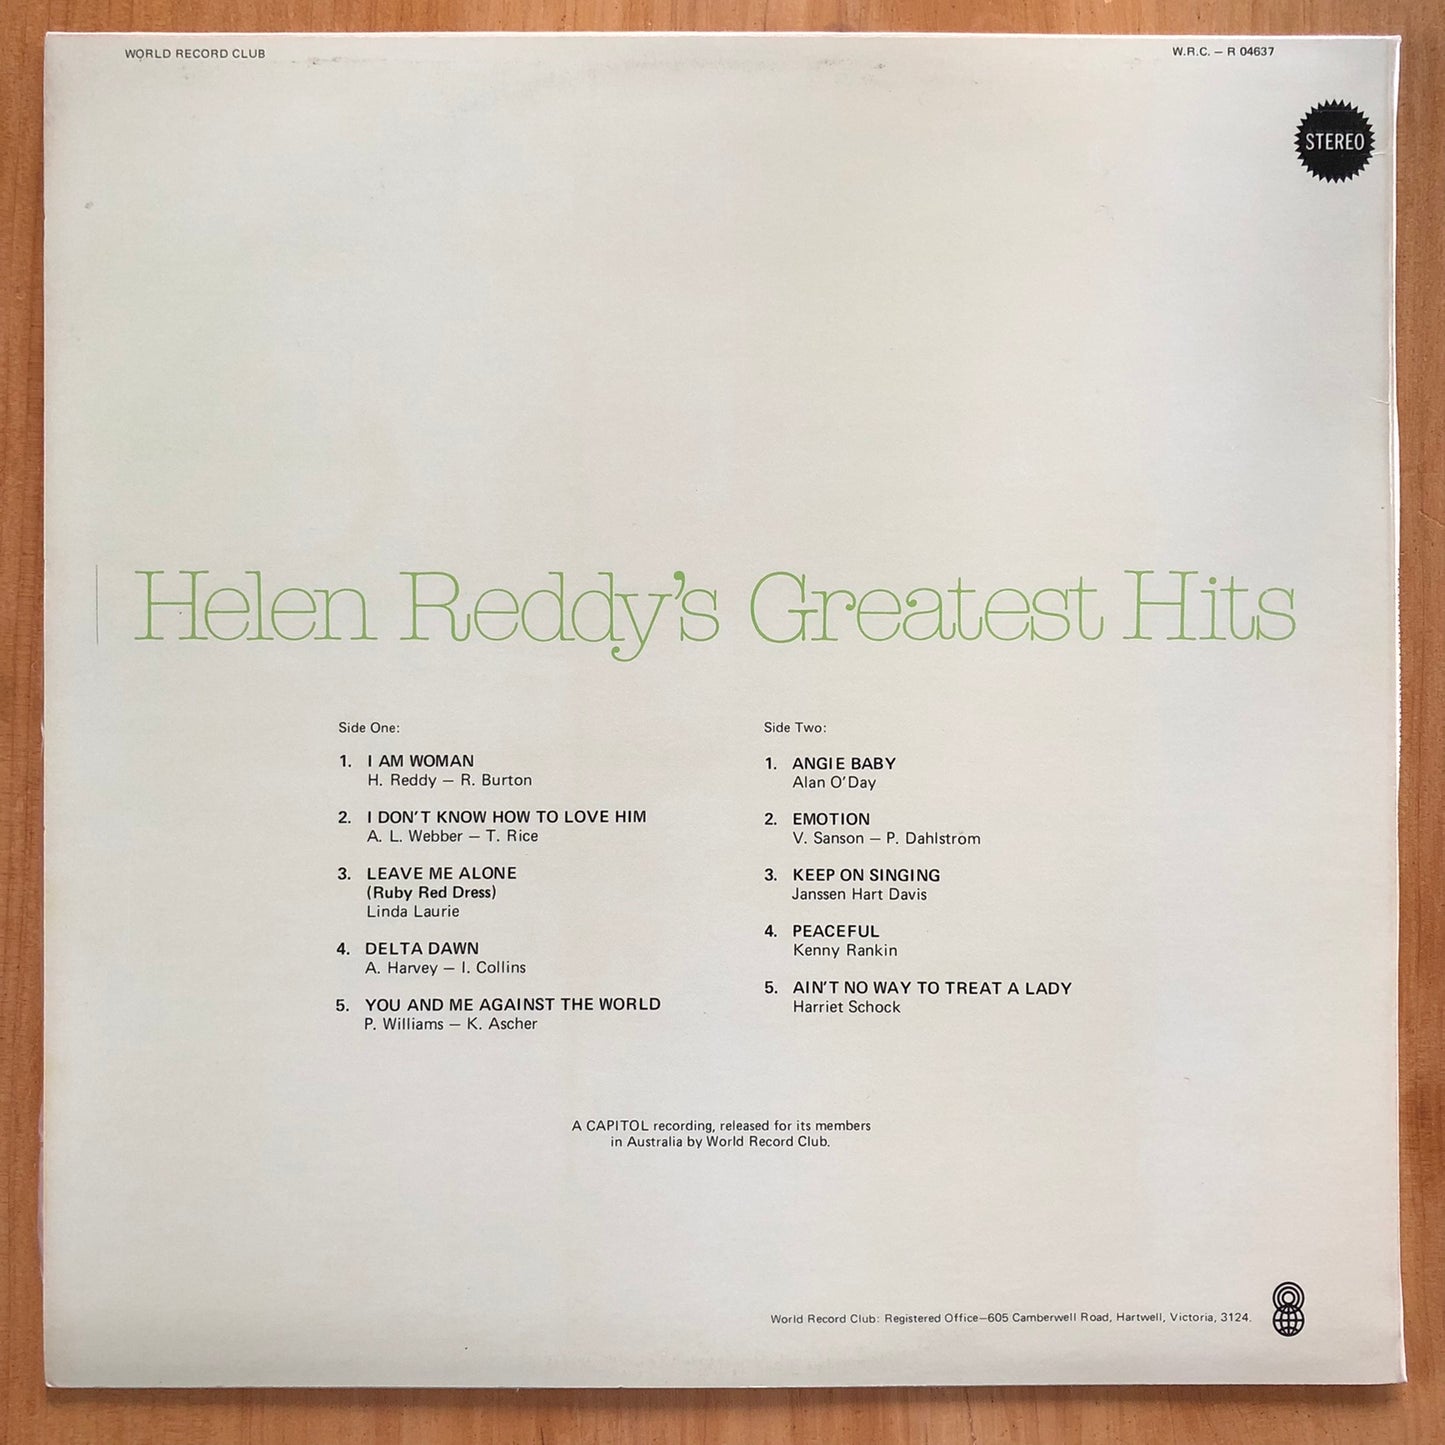 Helen Reddy - Greatest Hits